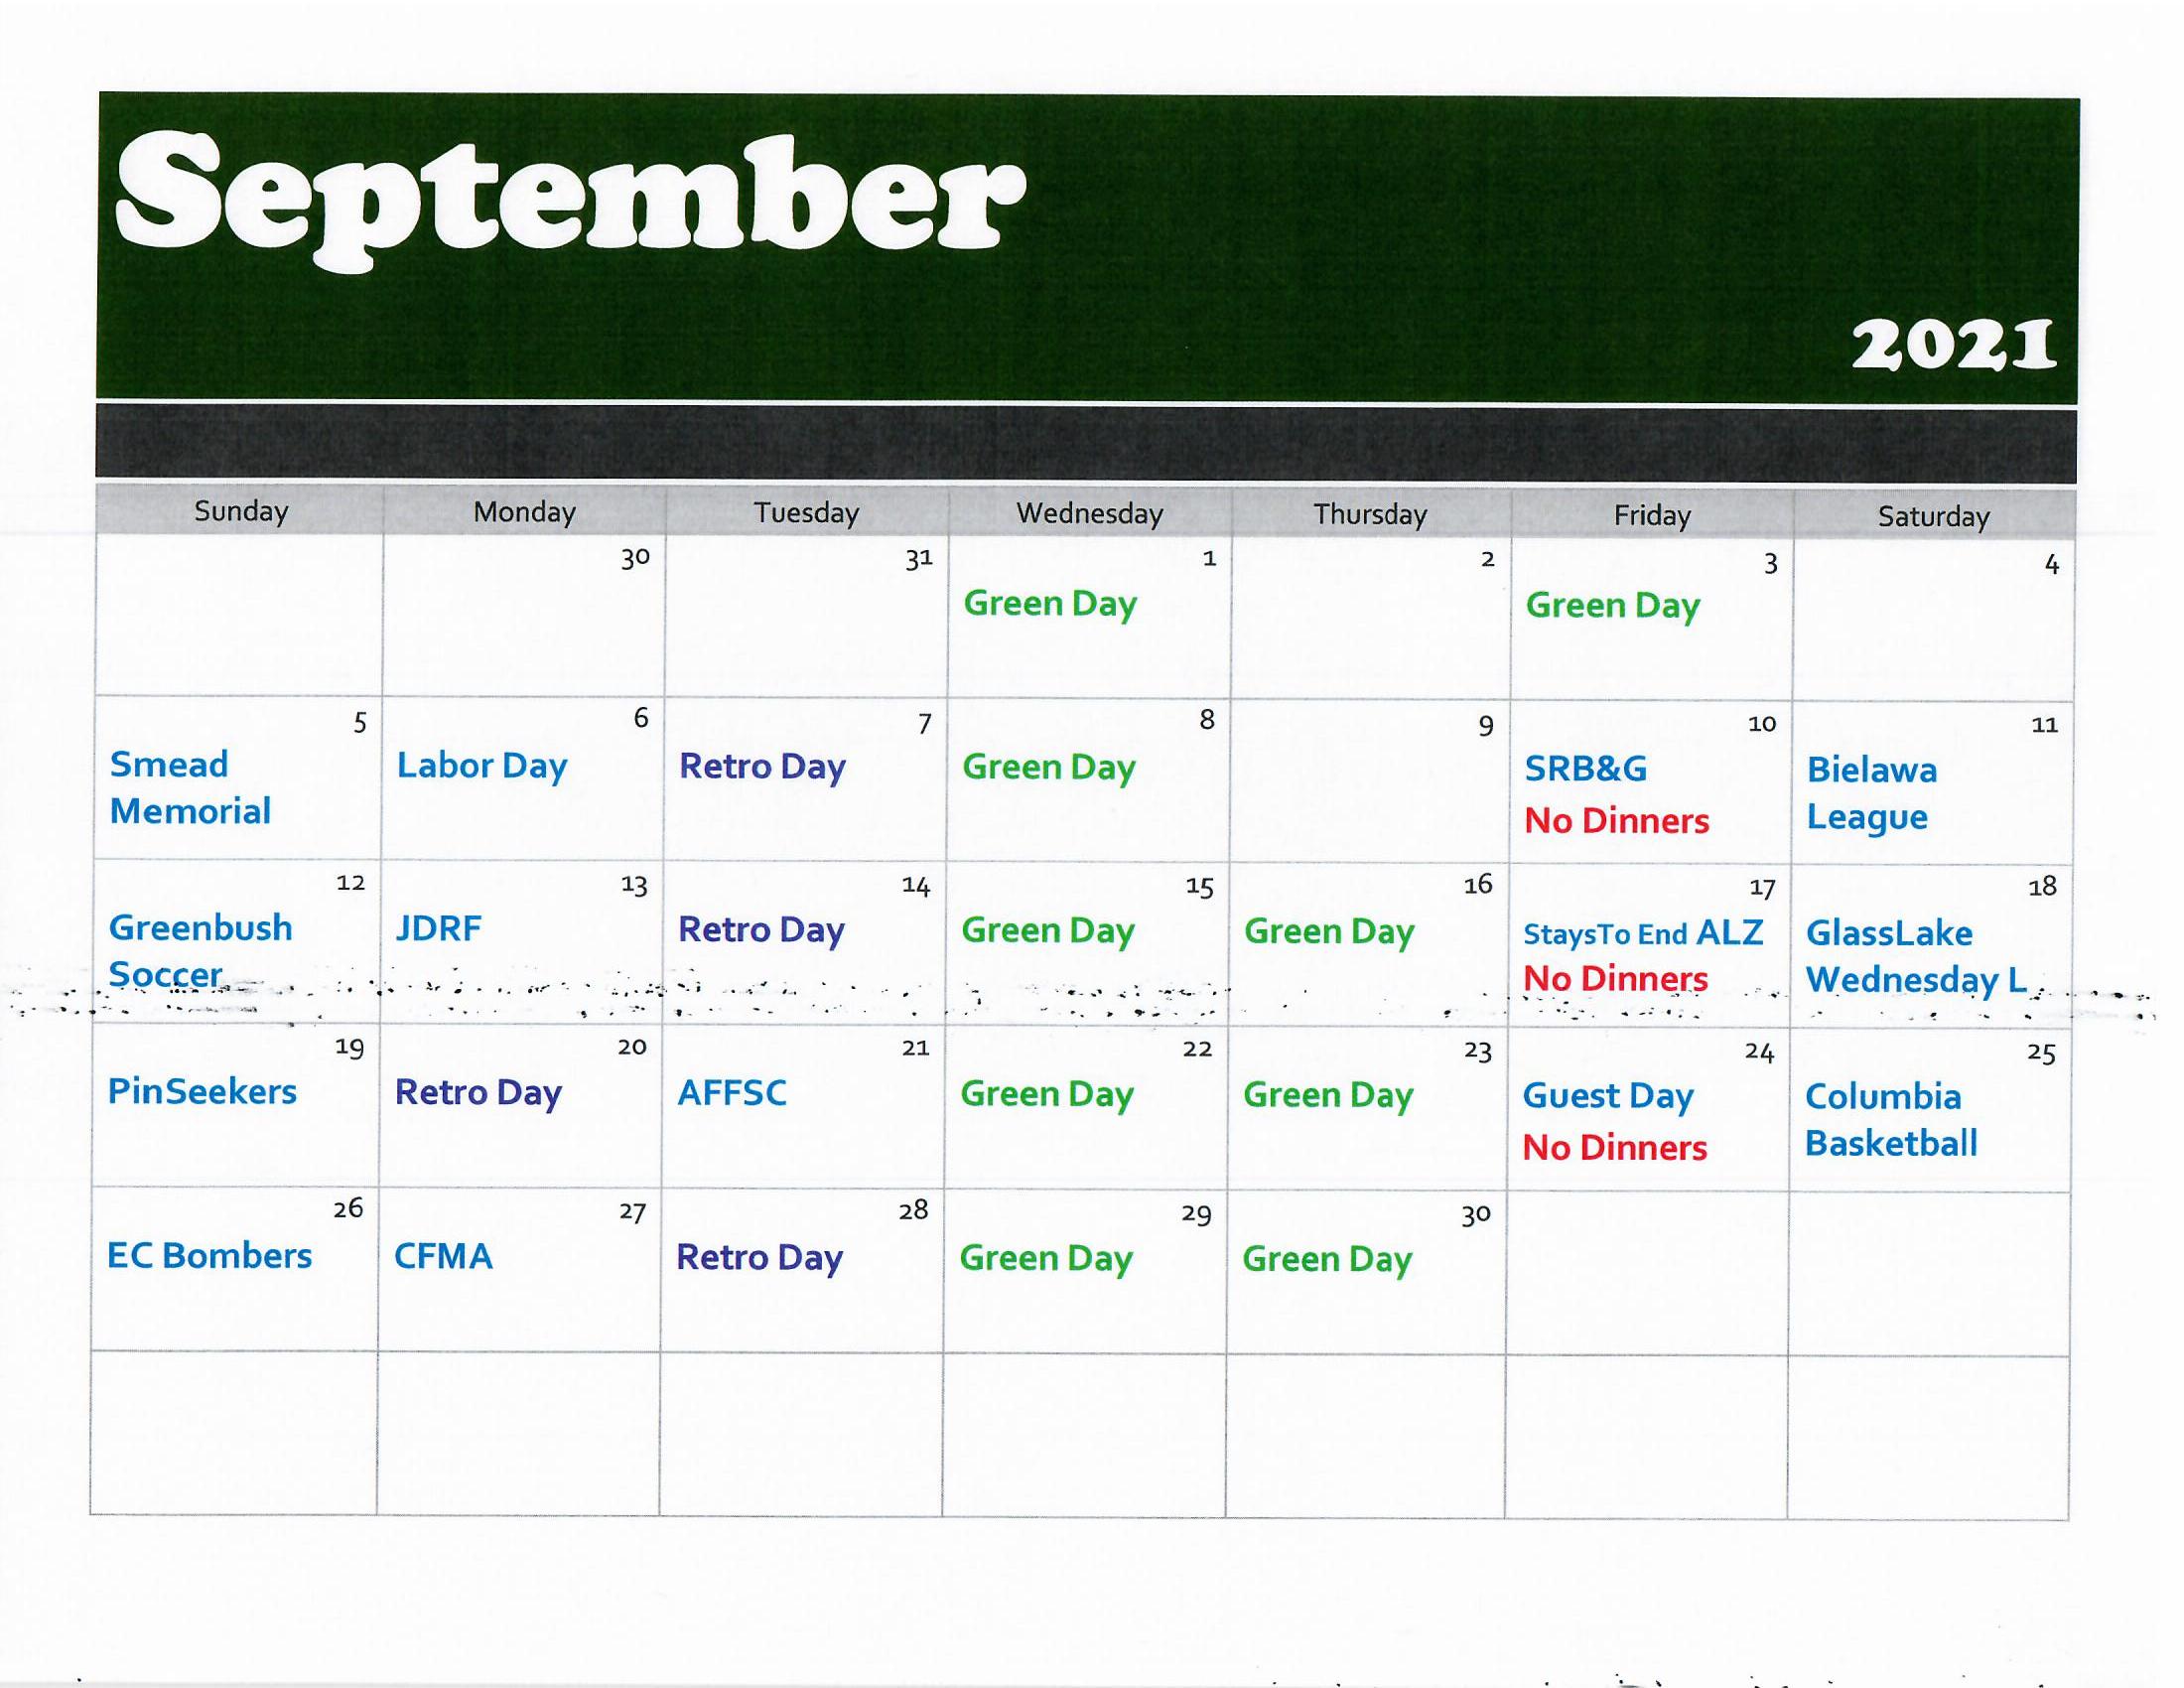 September golf calendar